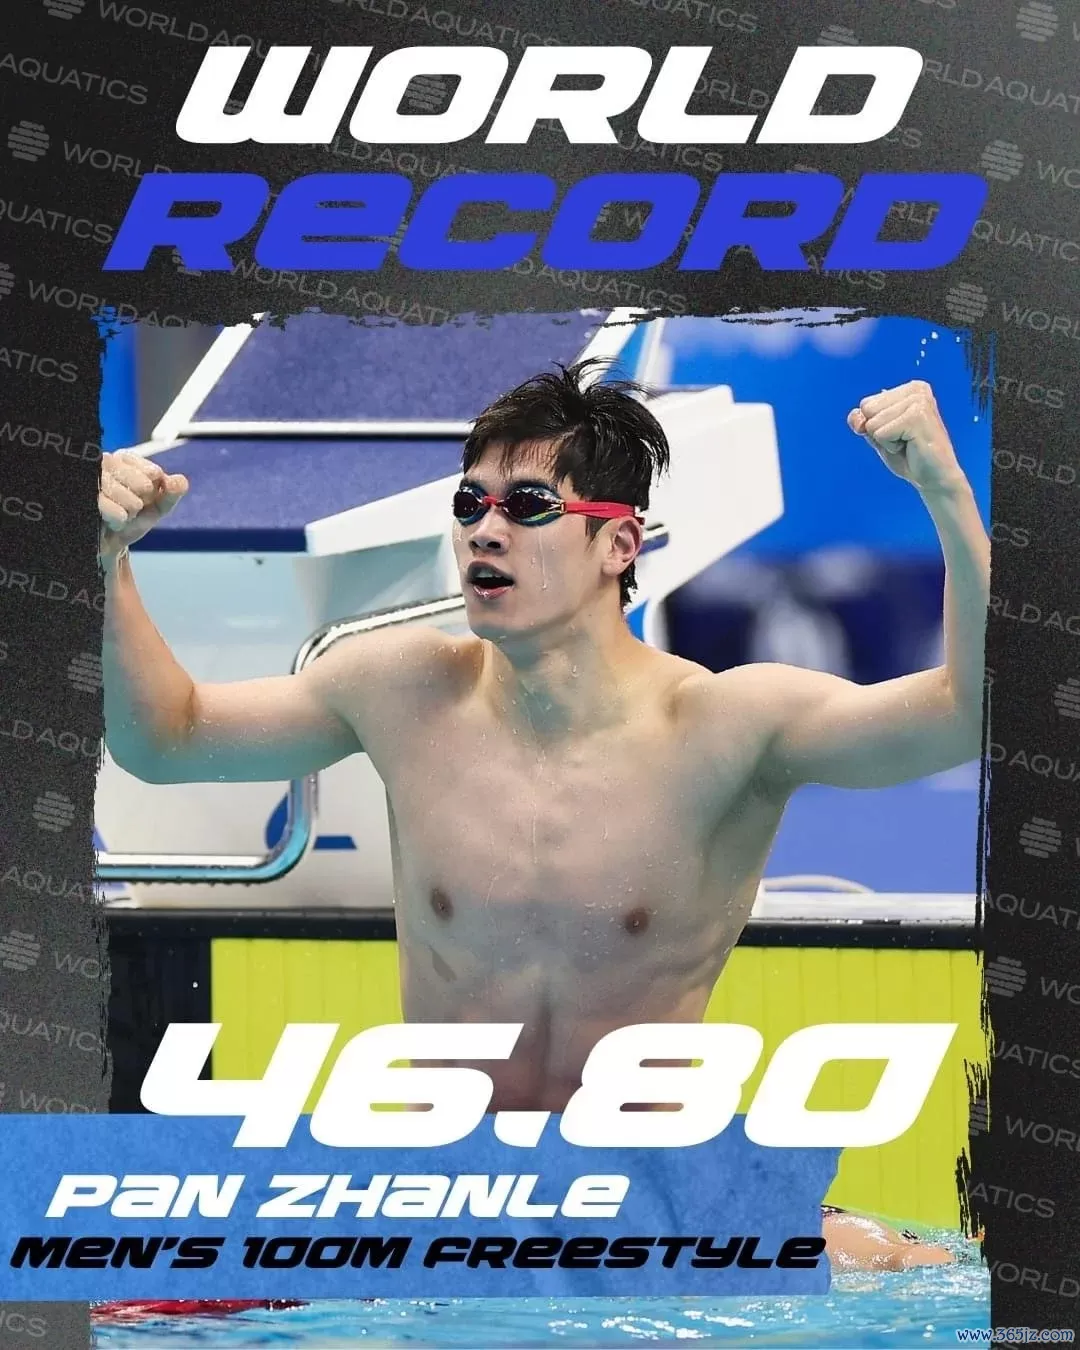 中国选手潘展乐打破男子100米自由泳世界纪录